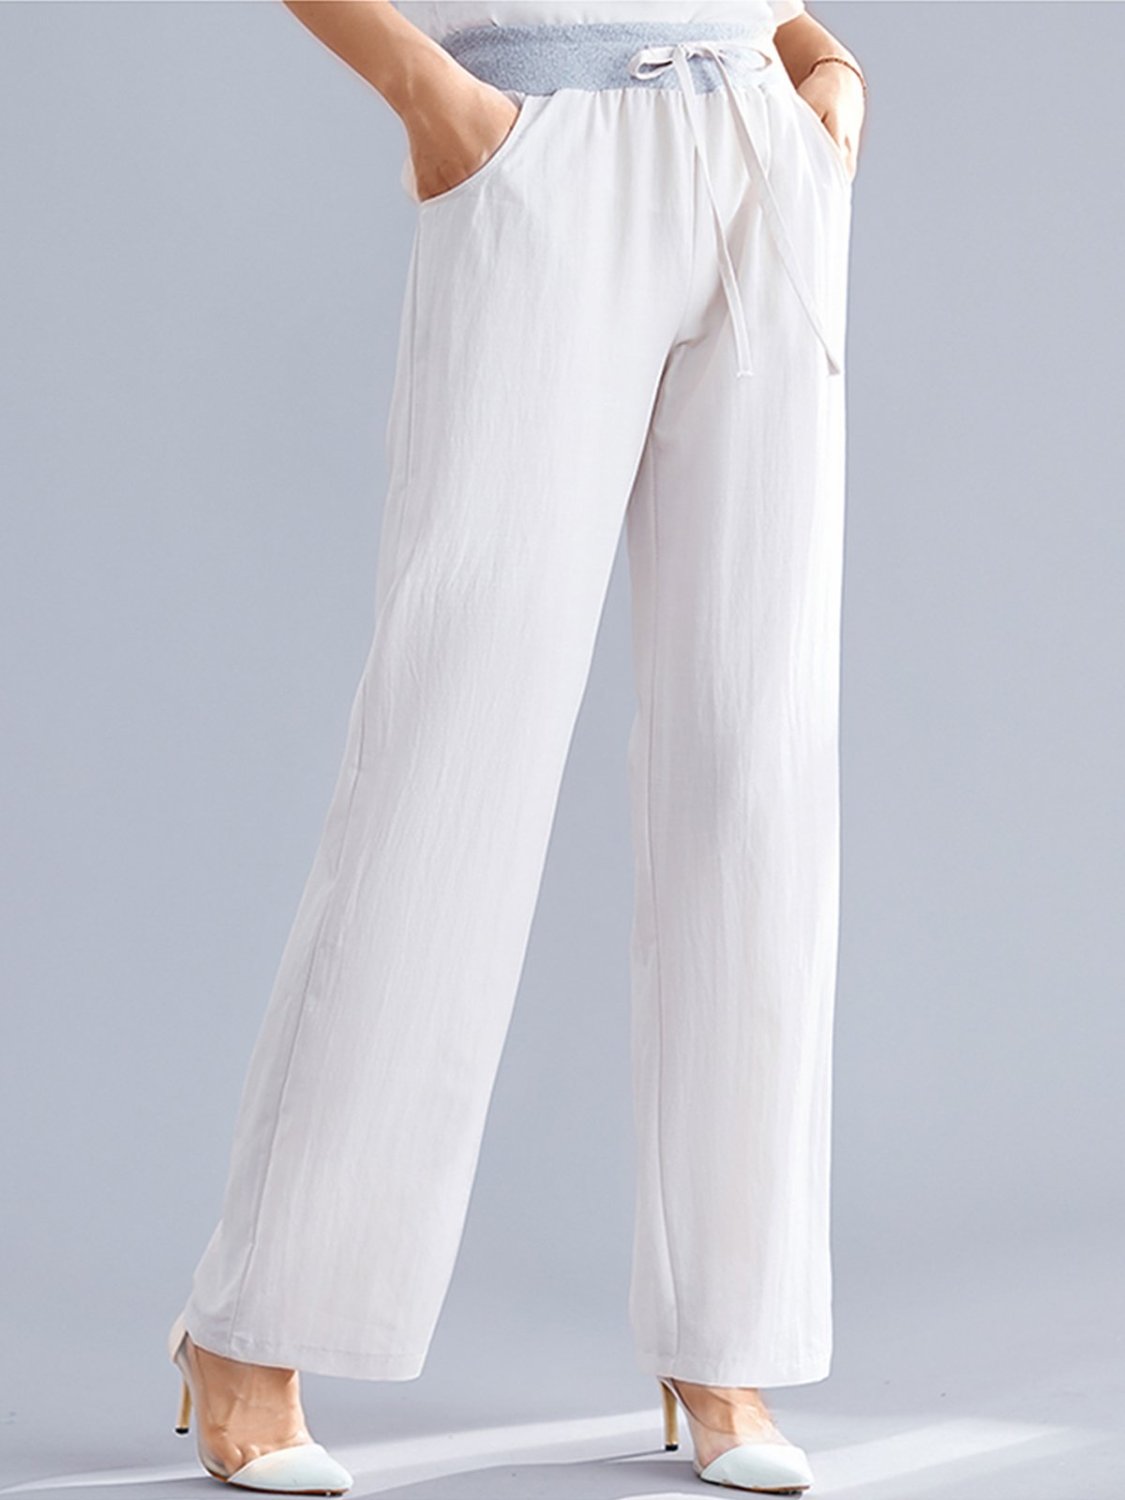 US$ 26.70 - Plus Size Women Plain Casual Pants - www.linenlooks.com